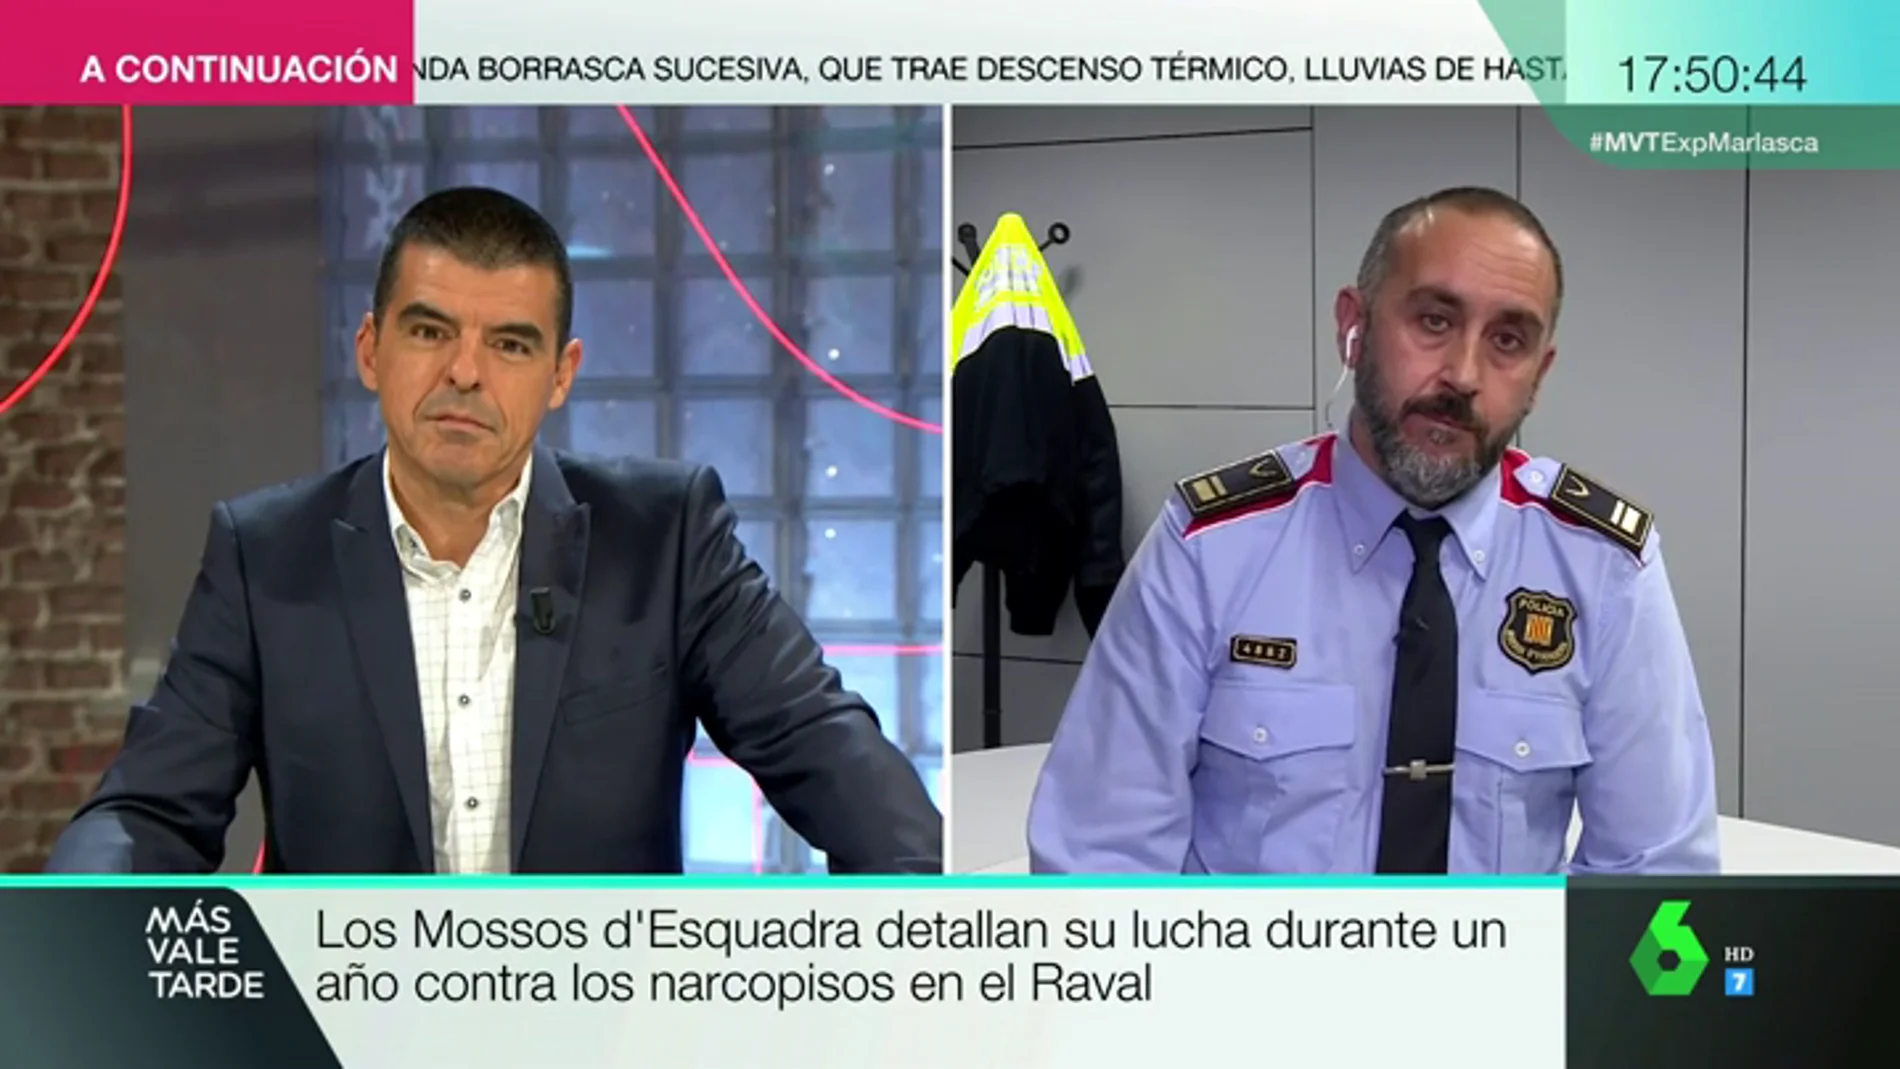 Antonio Rodríguez, mosso d'Esquadra: "Los 'narcopisos' son delincuencia organizada con mucha incidencia en la ciudadanía"